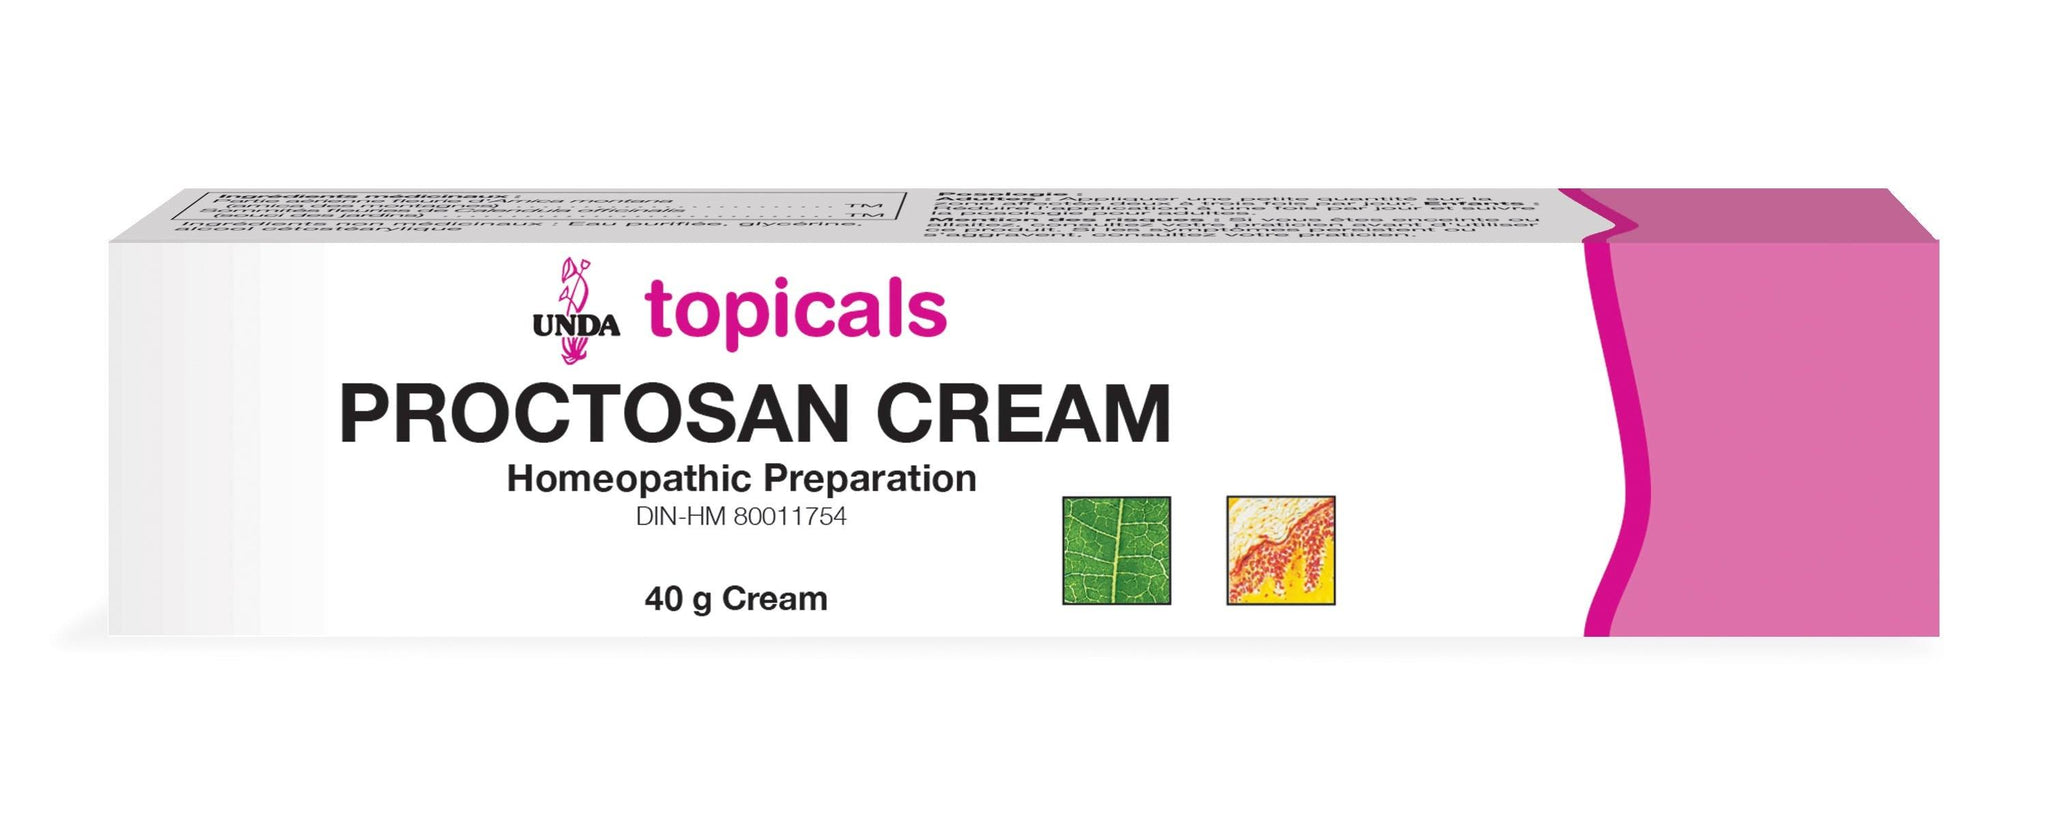 UNDA Proctosan Cream, 40g Online